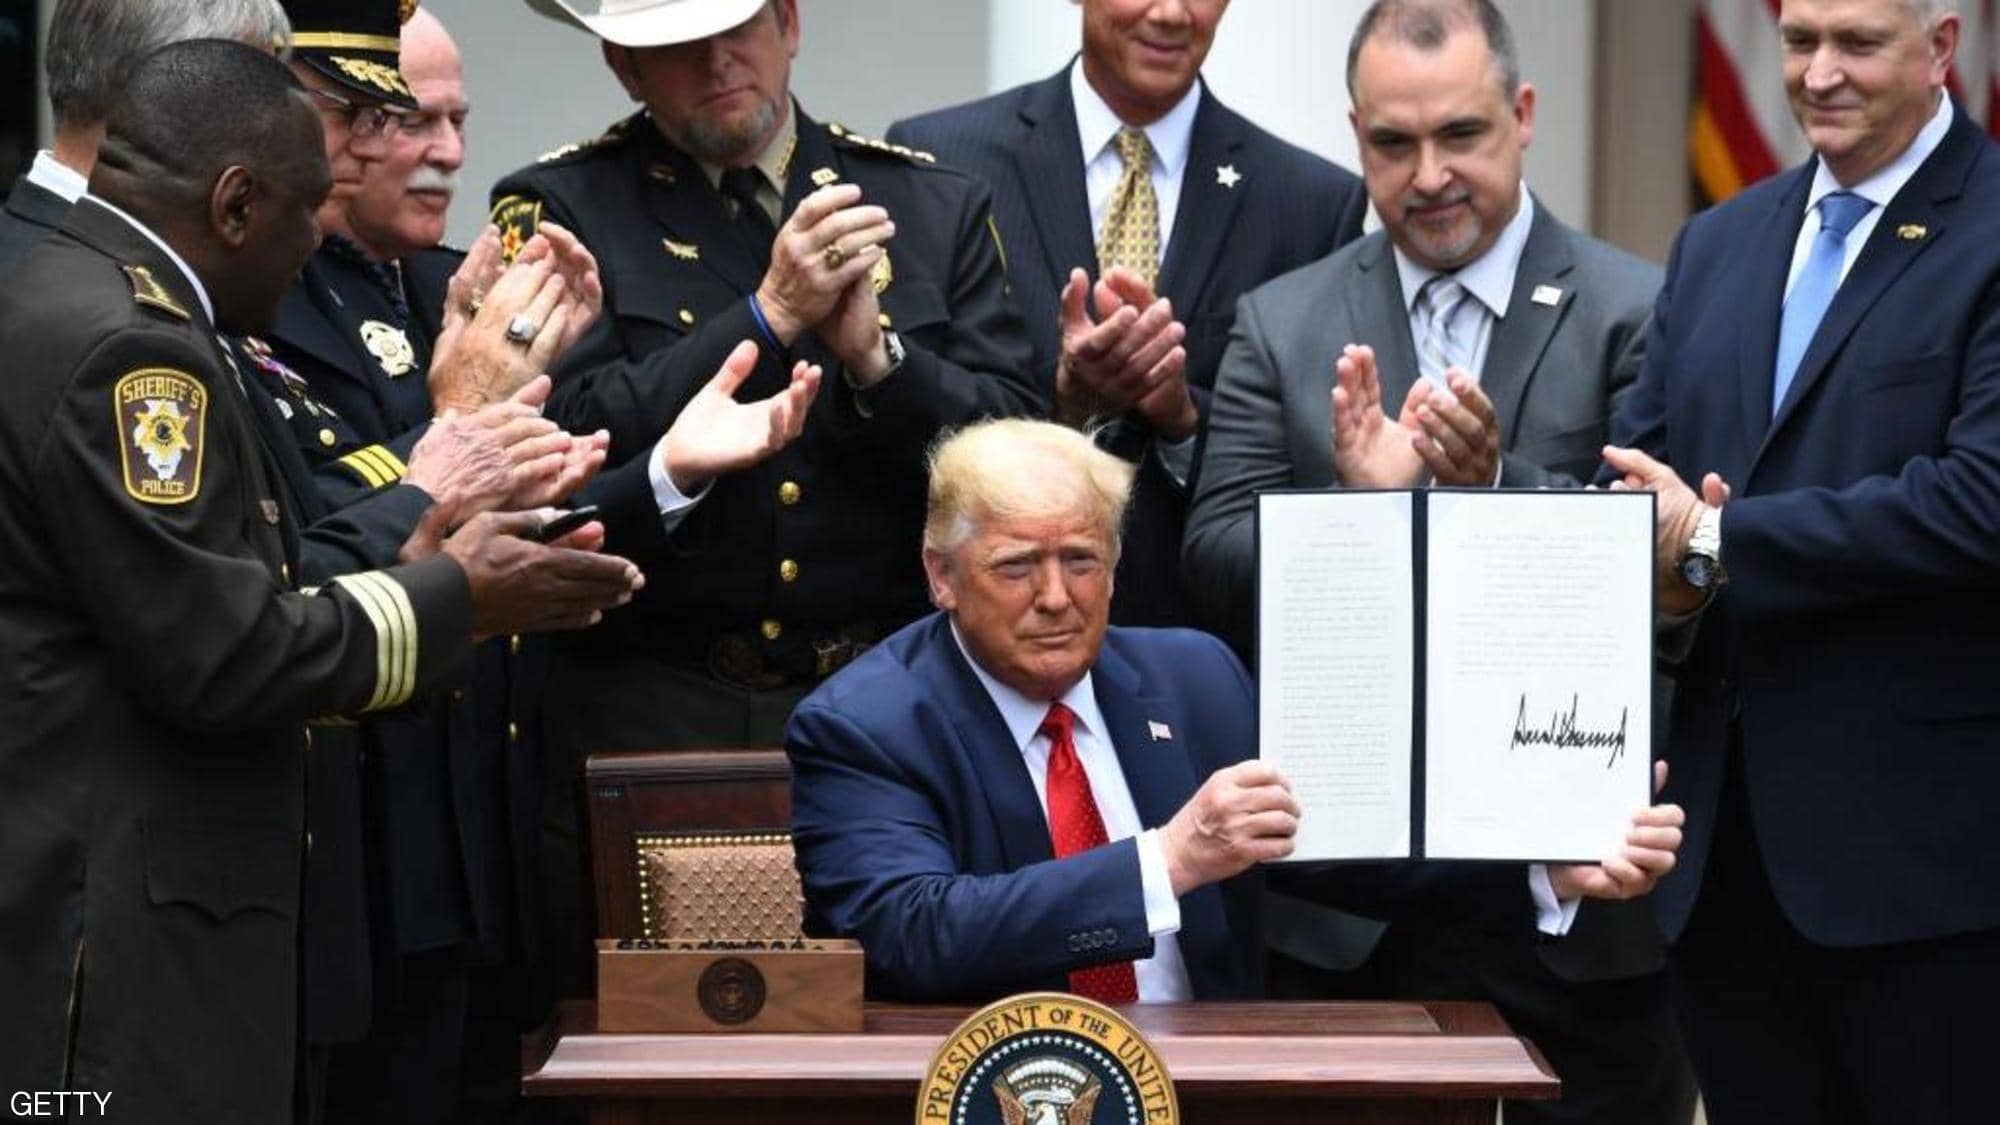 ترامب يوقع قرار رفع دولة عربية من قائمة "الإرهاب"